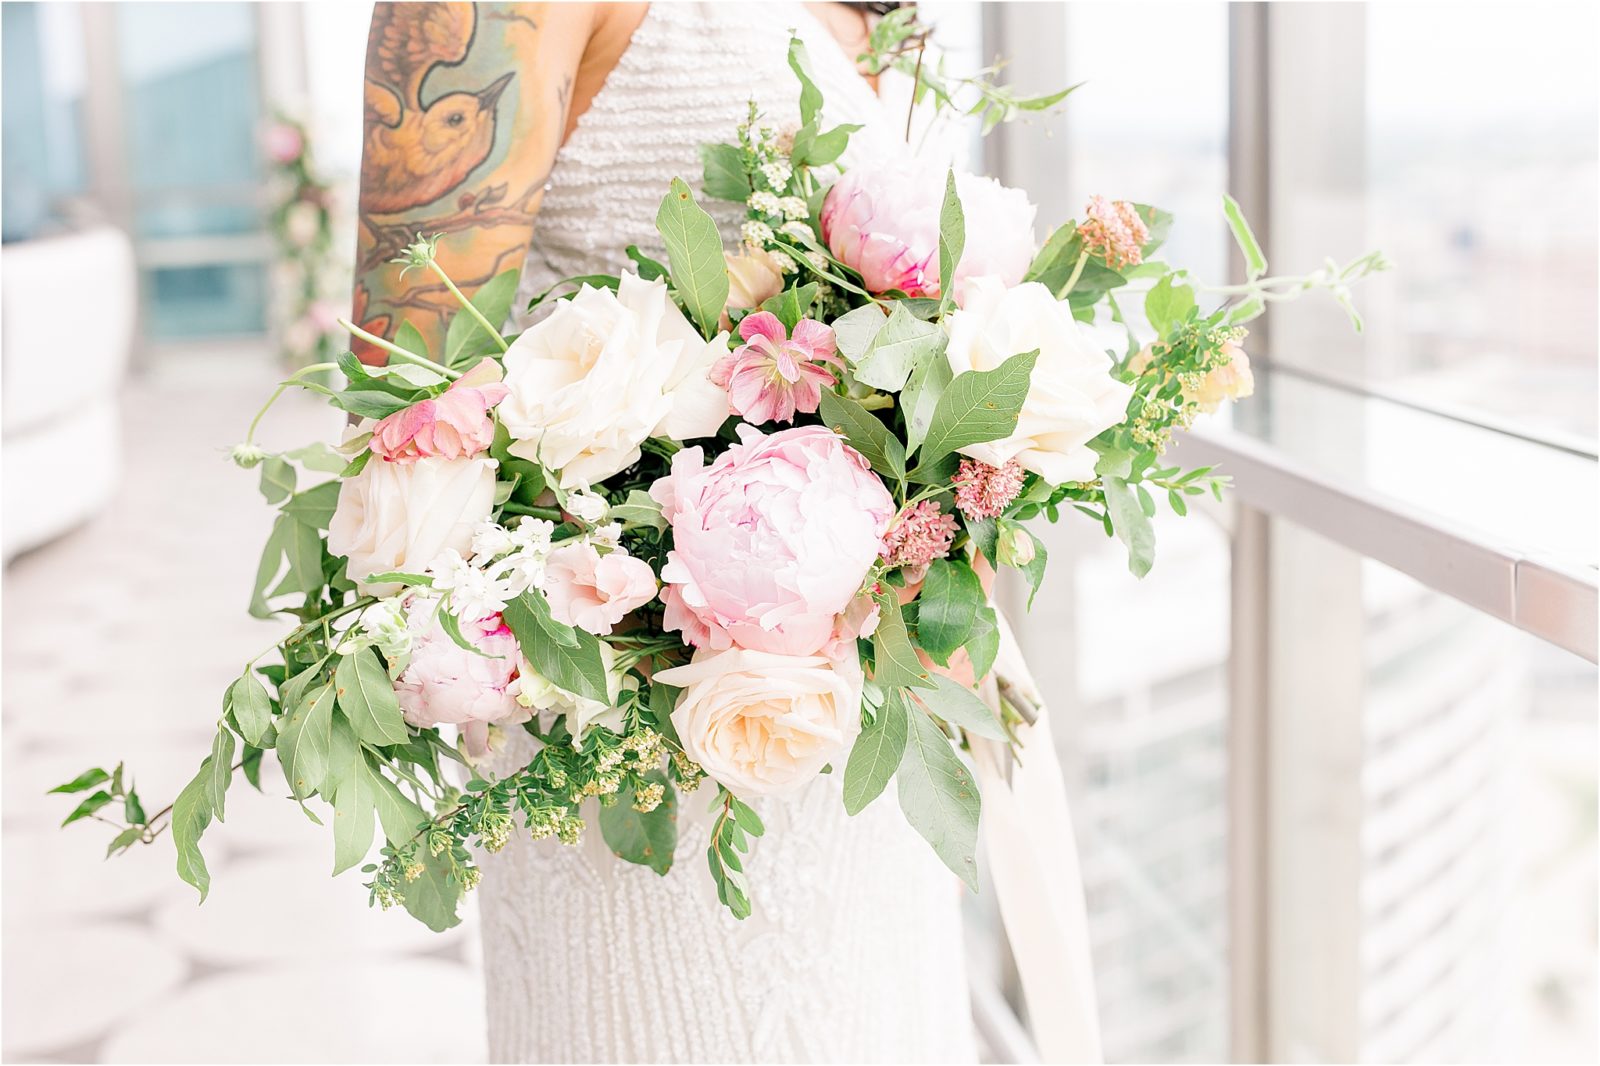 Wedding Bouquet Ideas by Wedding Stone in Dallas Texas by DFW Wedding Photographer Jillian Hogan 